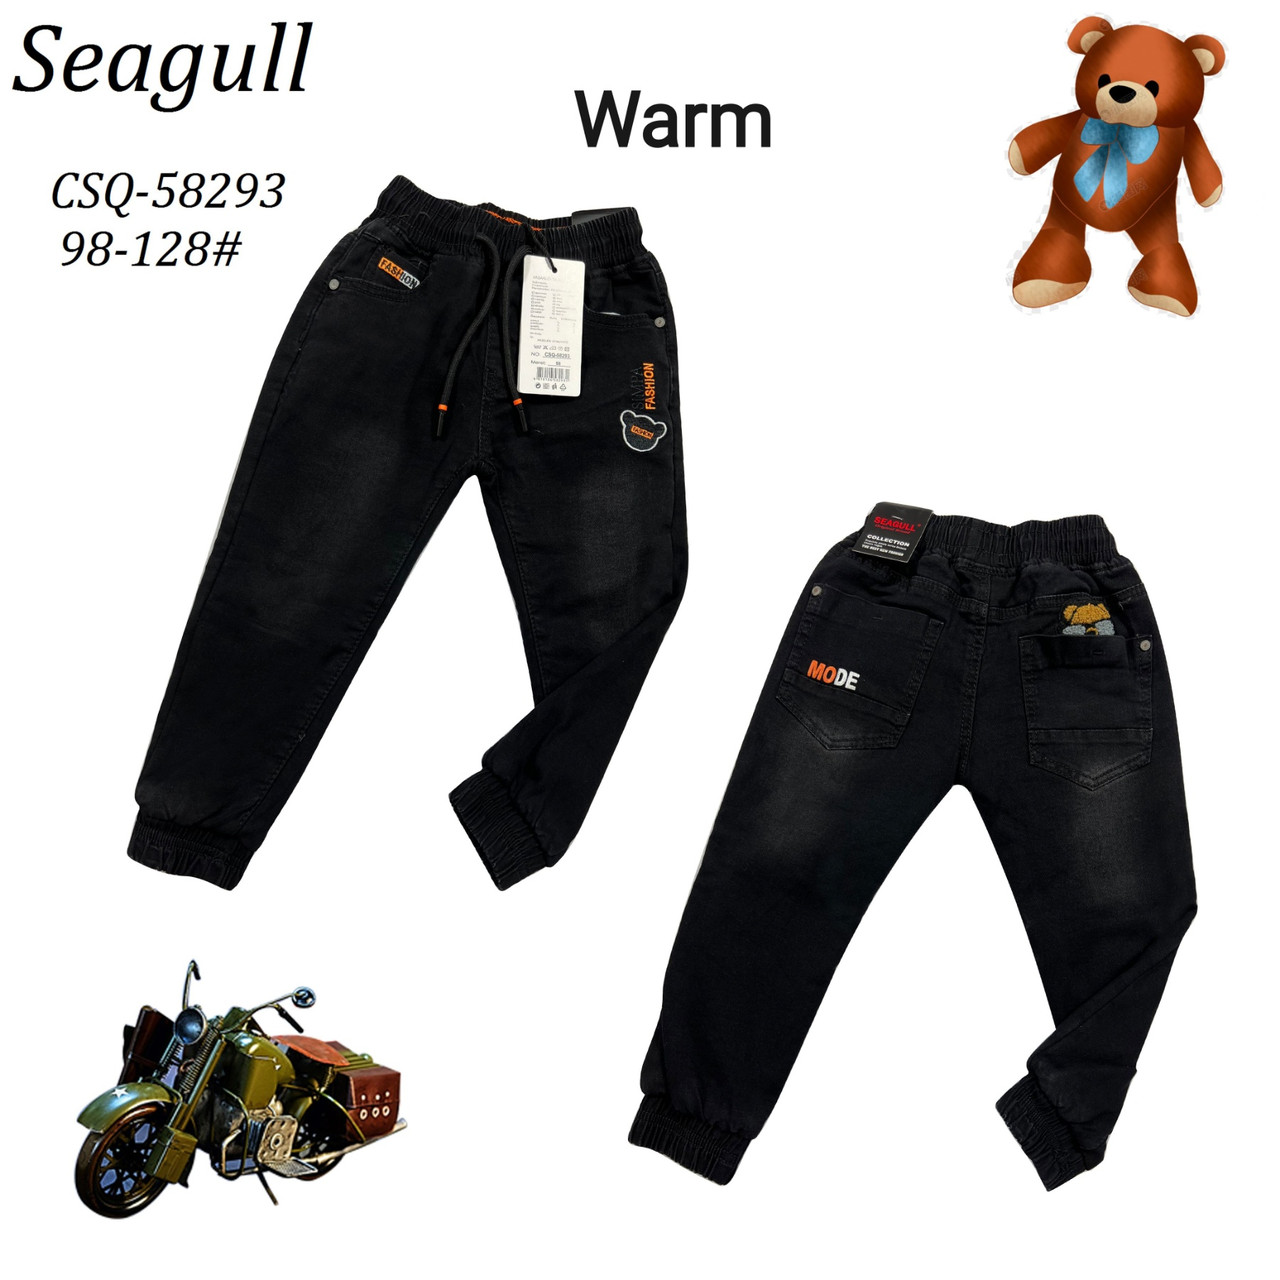 Утеплені джинси для хлопчиків оптом, Seagull, розміри 98-128, арт. CSQ-58293